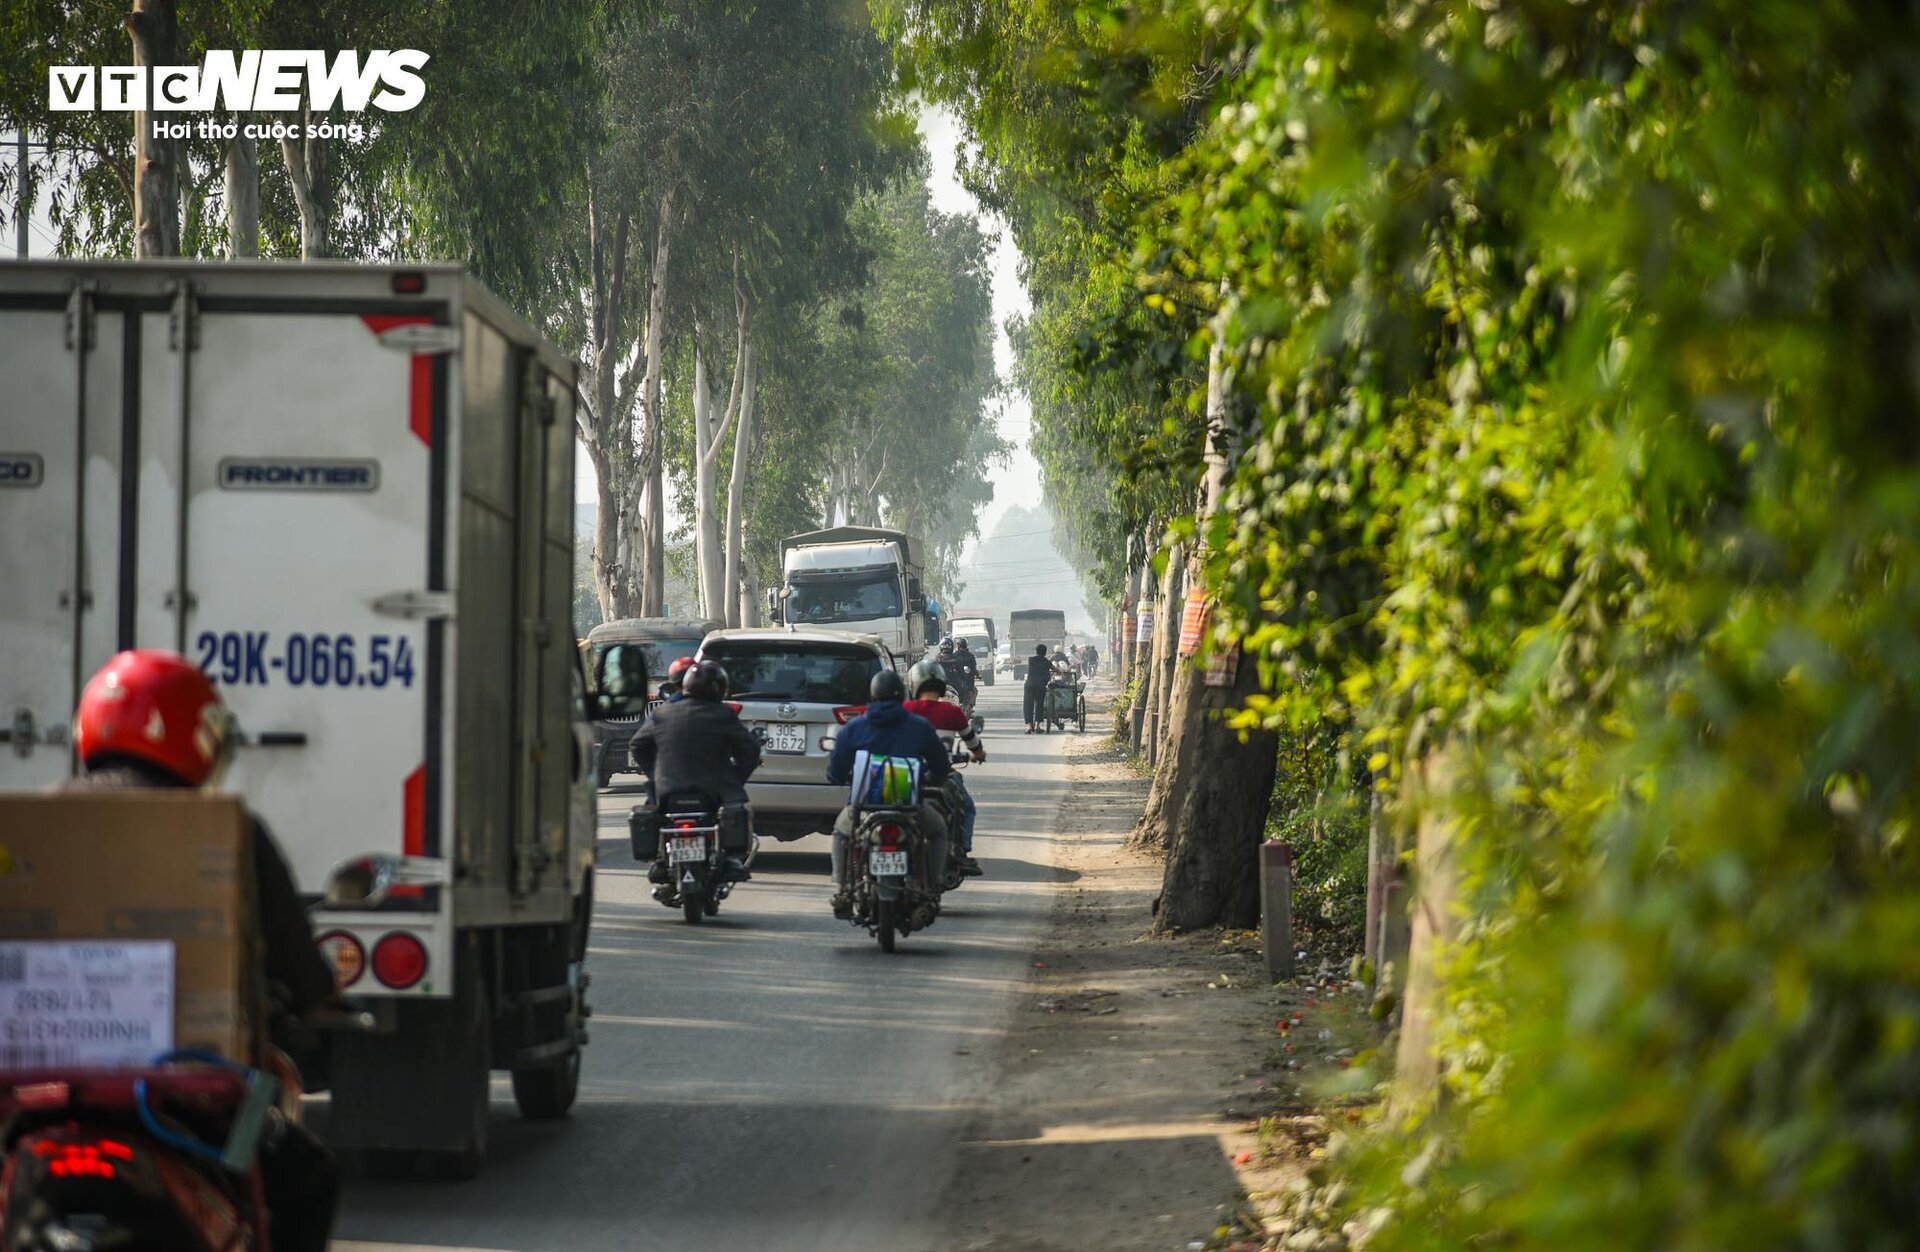 Cận cảnh tuyến đường ở Hà Nội sắp được đầu tư 2.800 tỷ đồng để mở rộng- Ảnh 11.